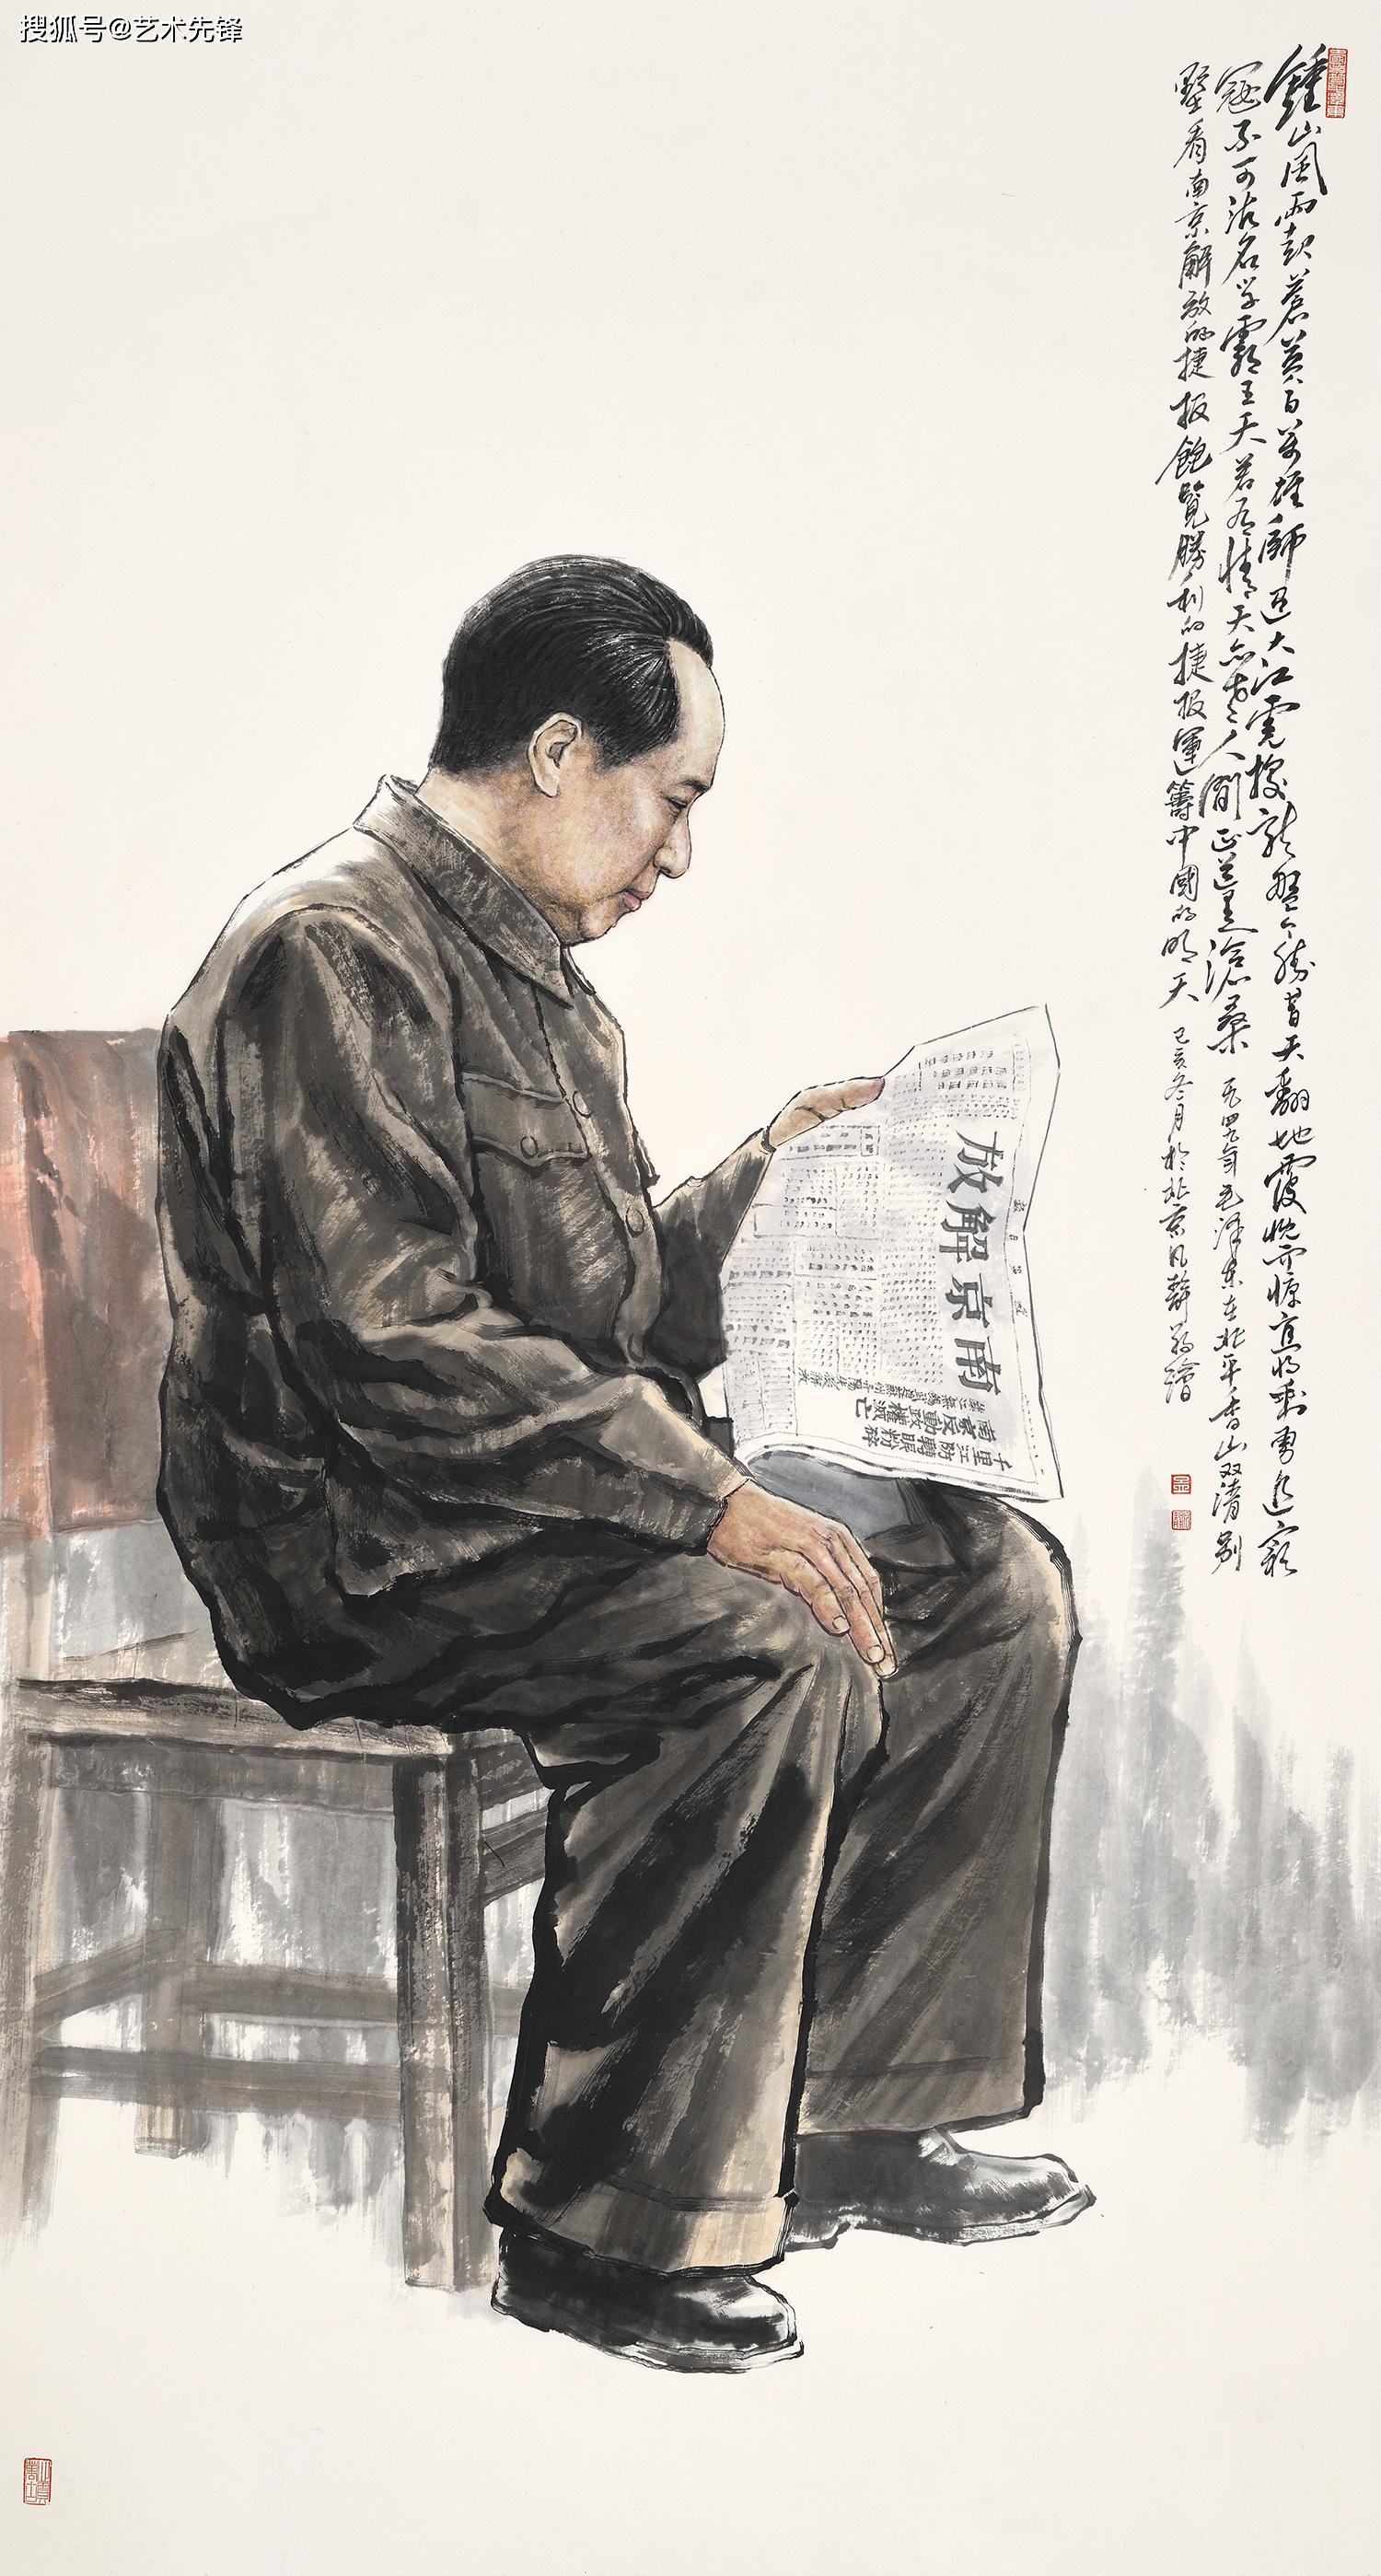 展讯:著名画家孟繁静红色题材国画精品展(北京宋庄)